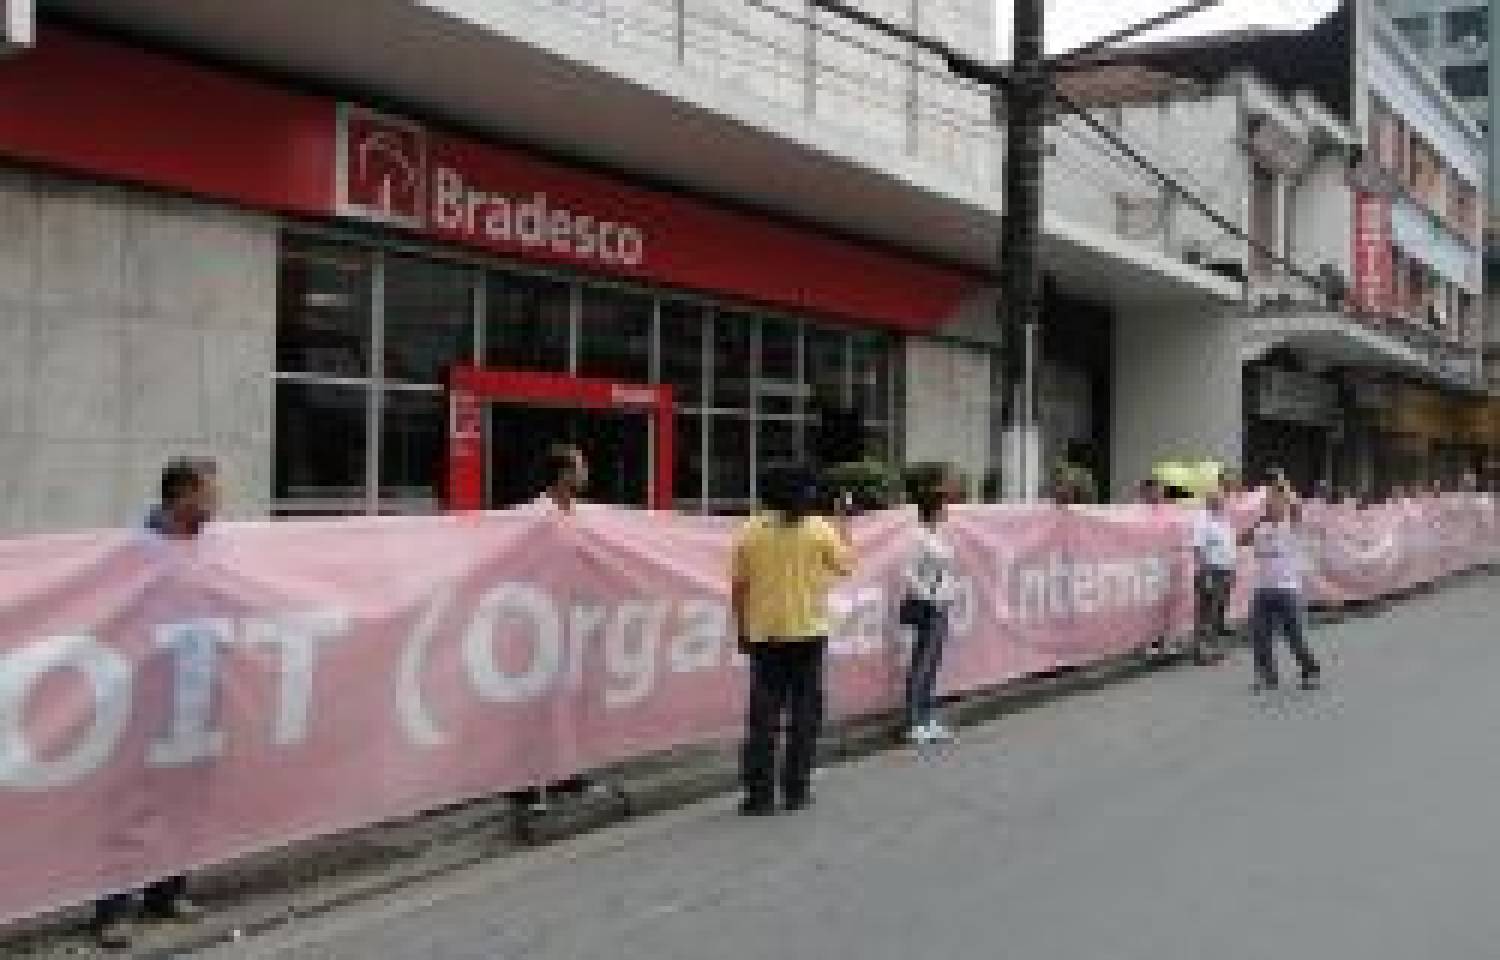 Protesto inédito no Bradesco com faixa de 40 metros